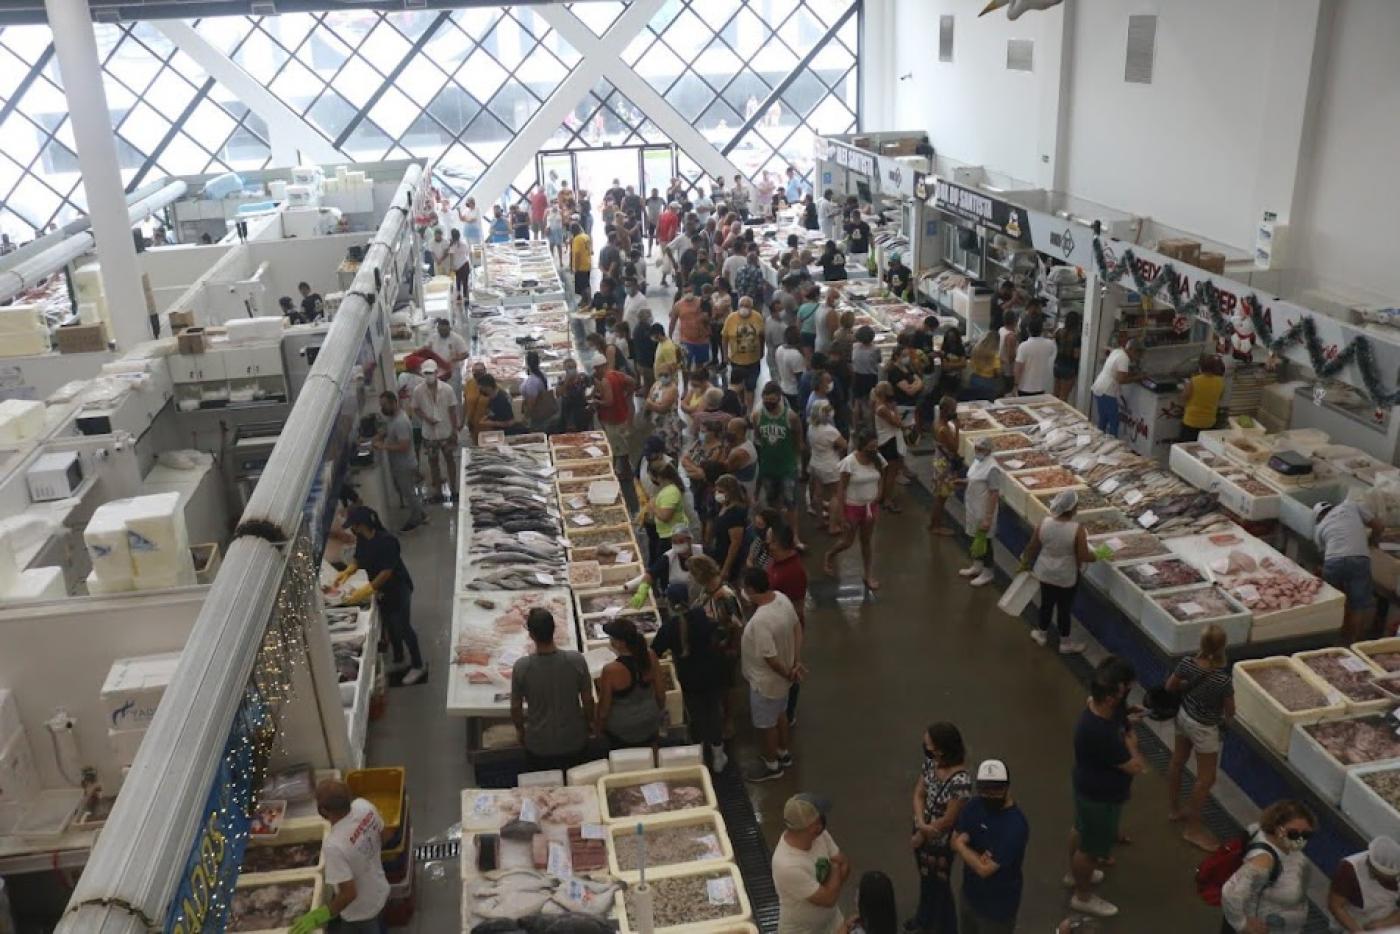 vista geral do mercado de peixe, com boxes vistos de cima e o público circulando. #paratodosverem